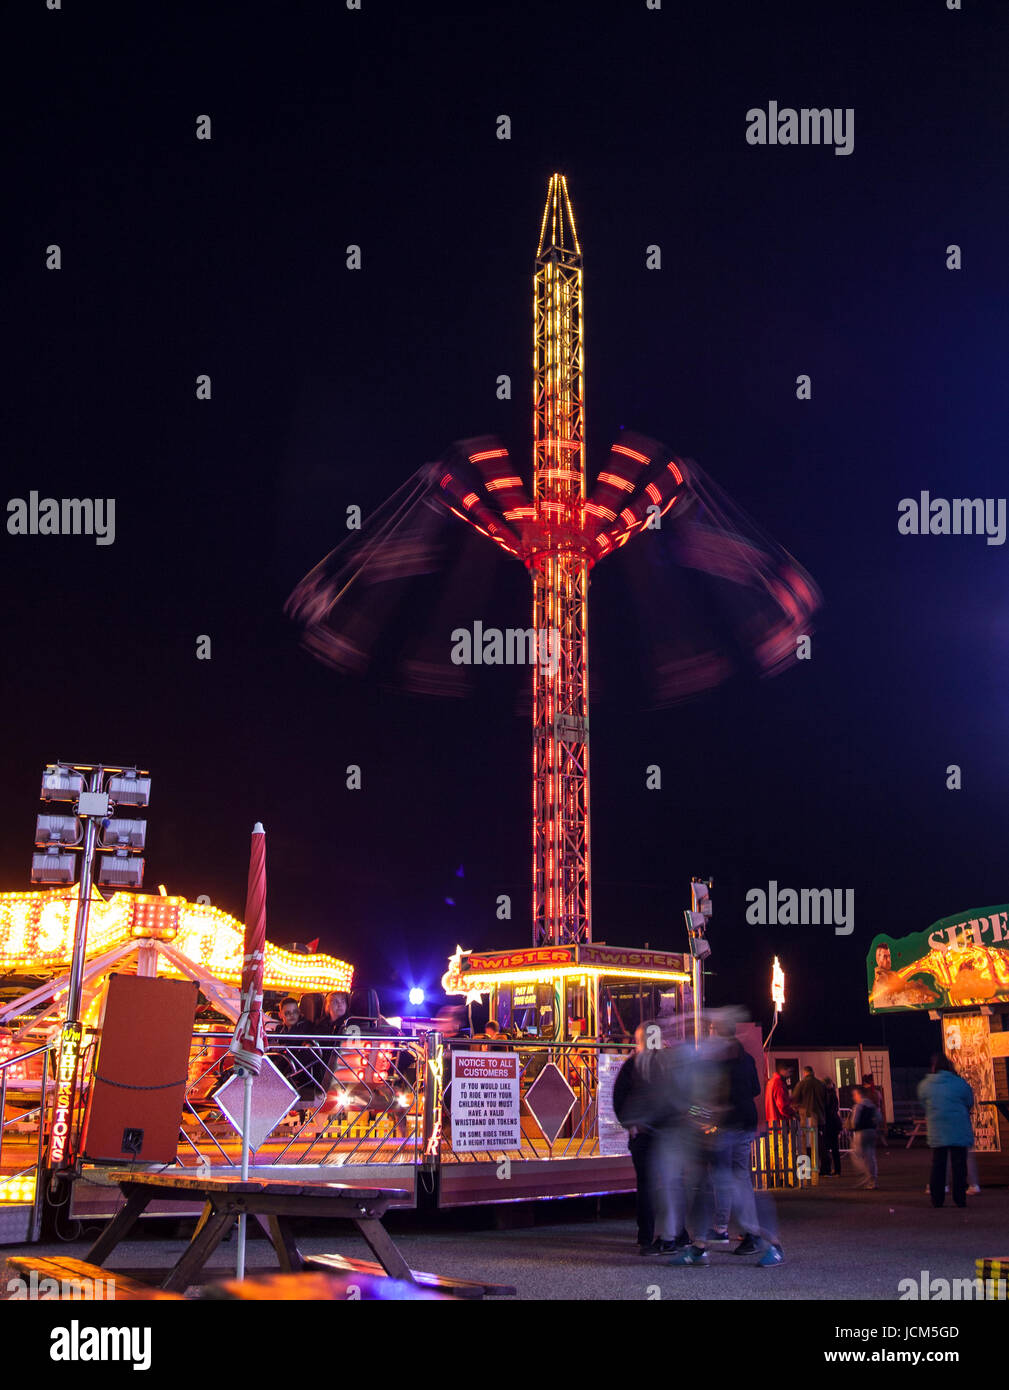 rides lit up at night at the fun fair Stock Photo